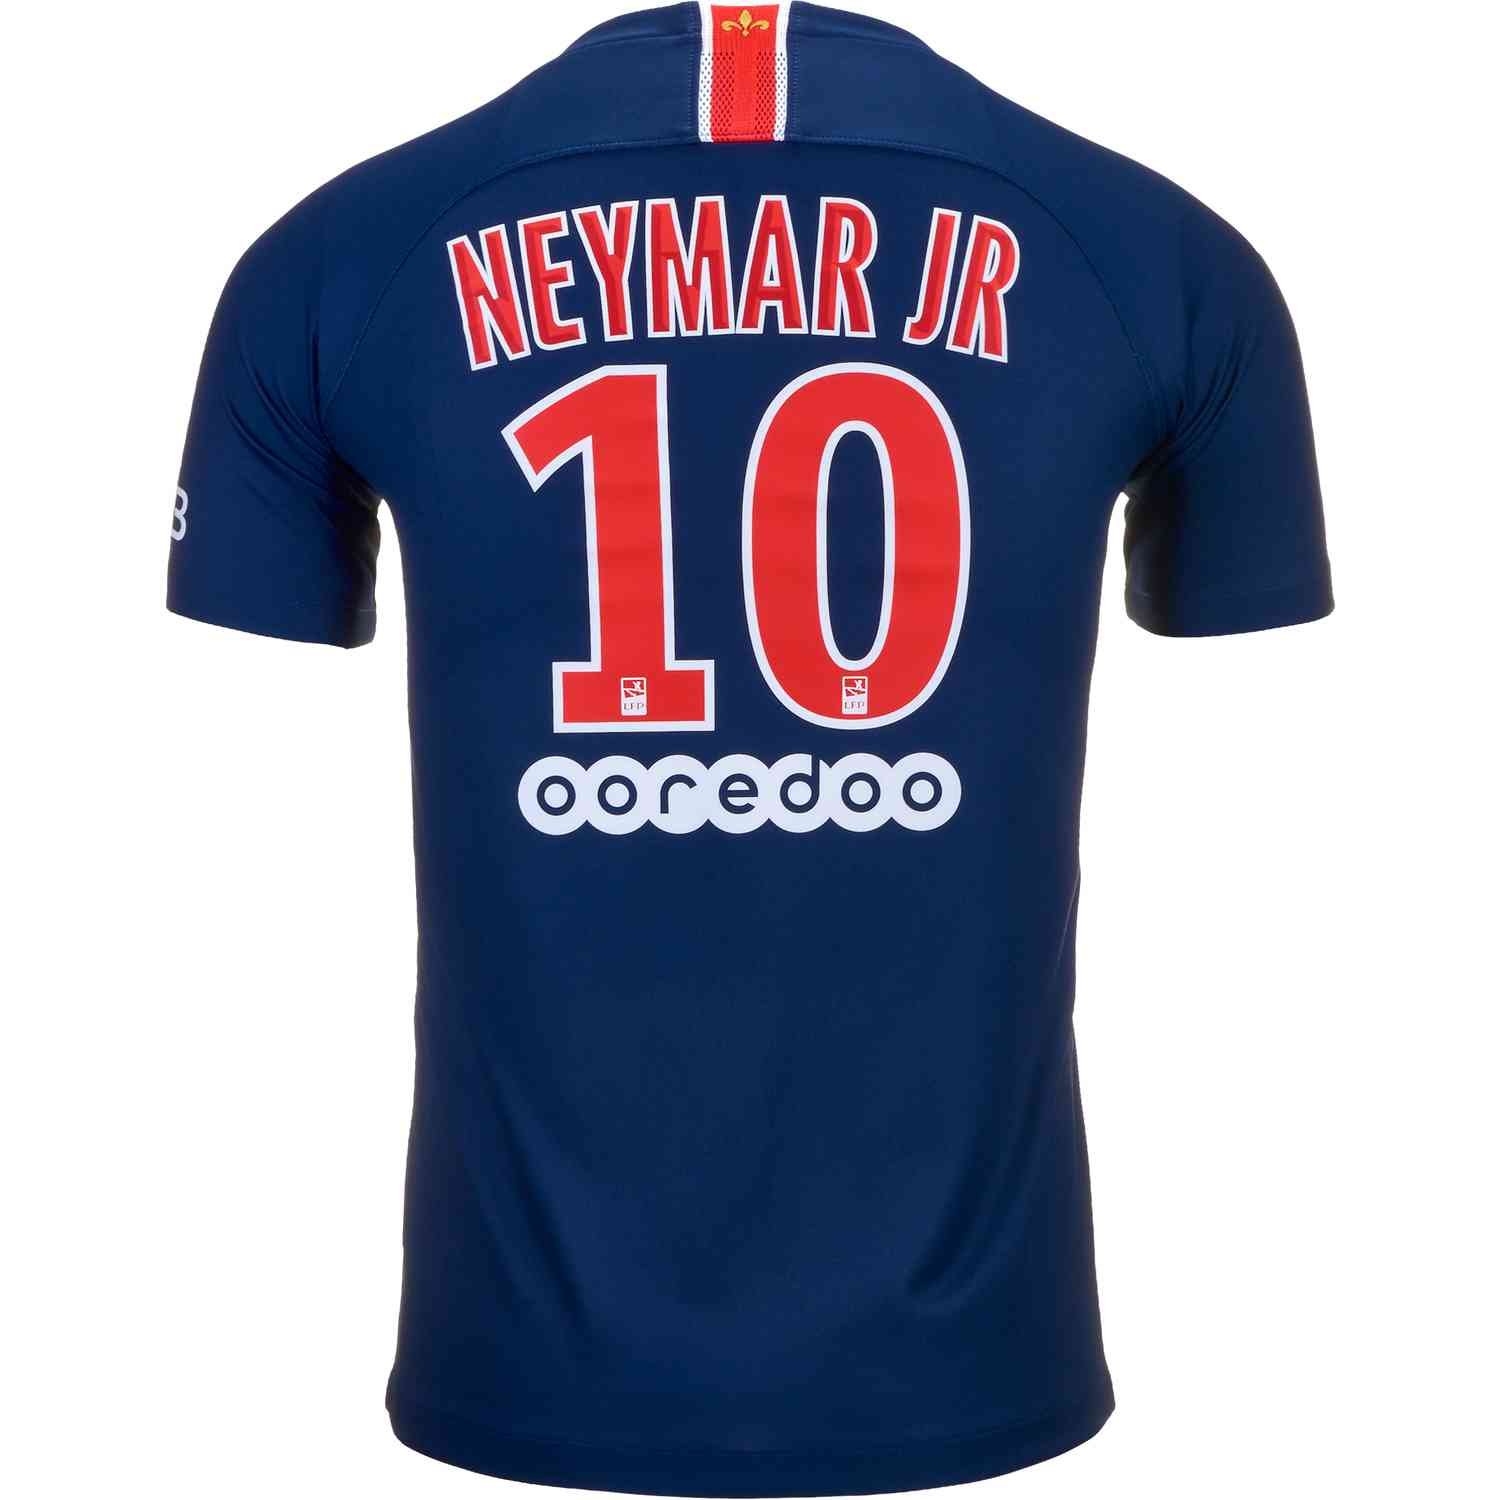 neymar jr youth jersey